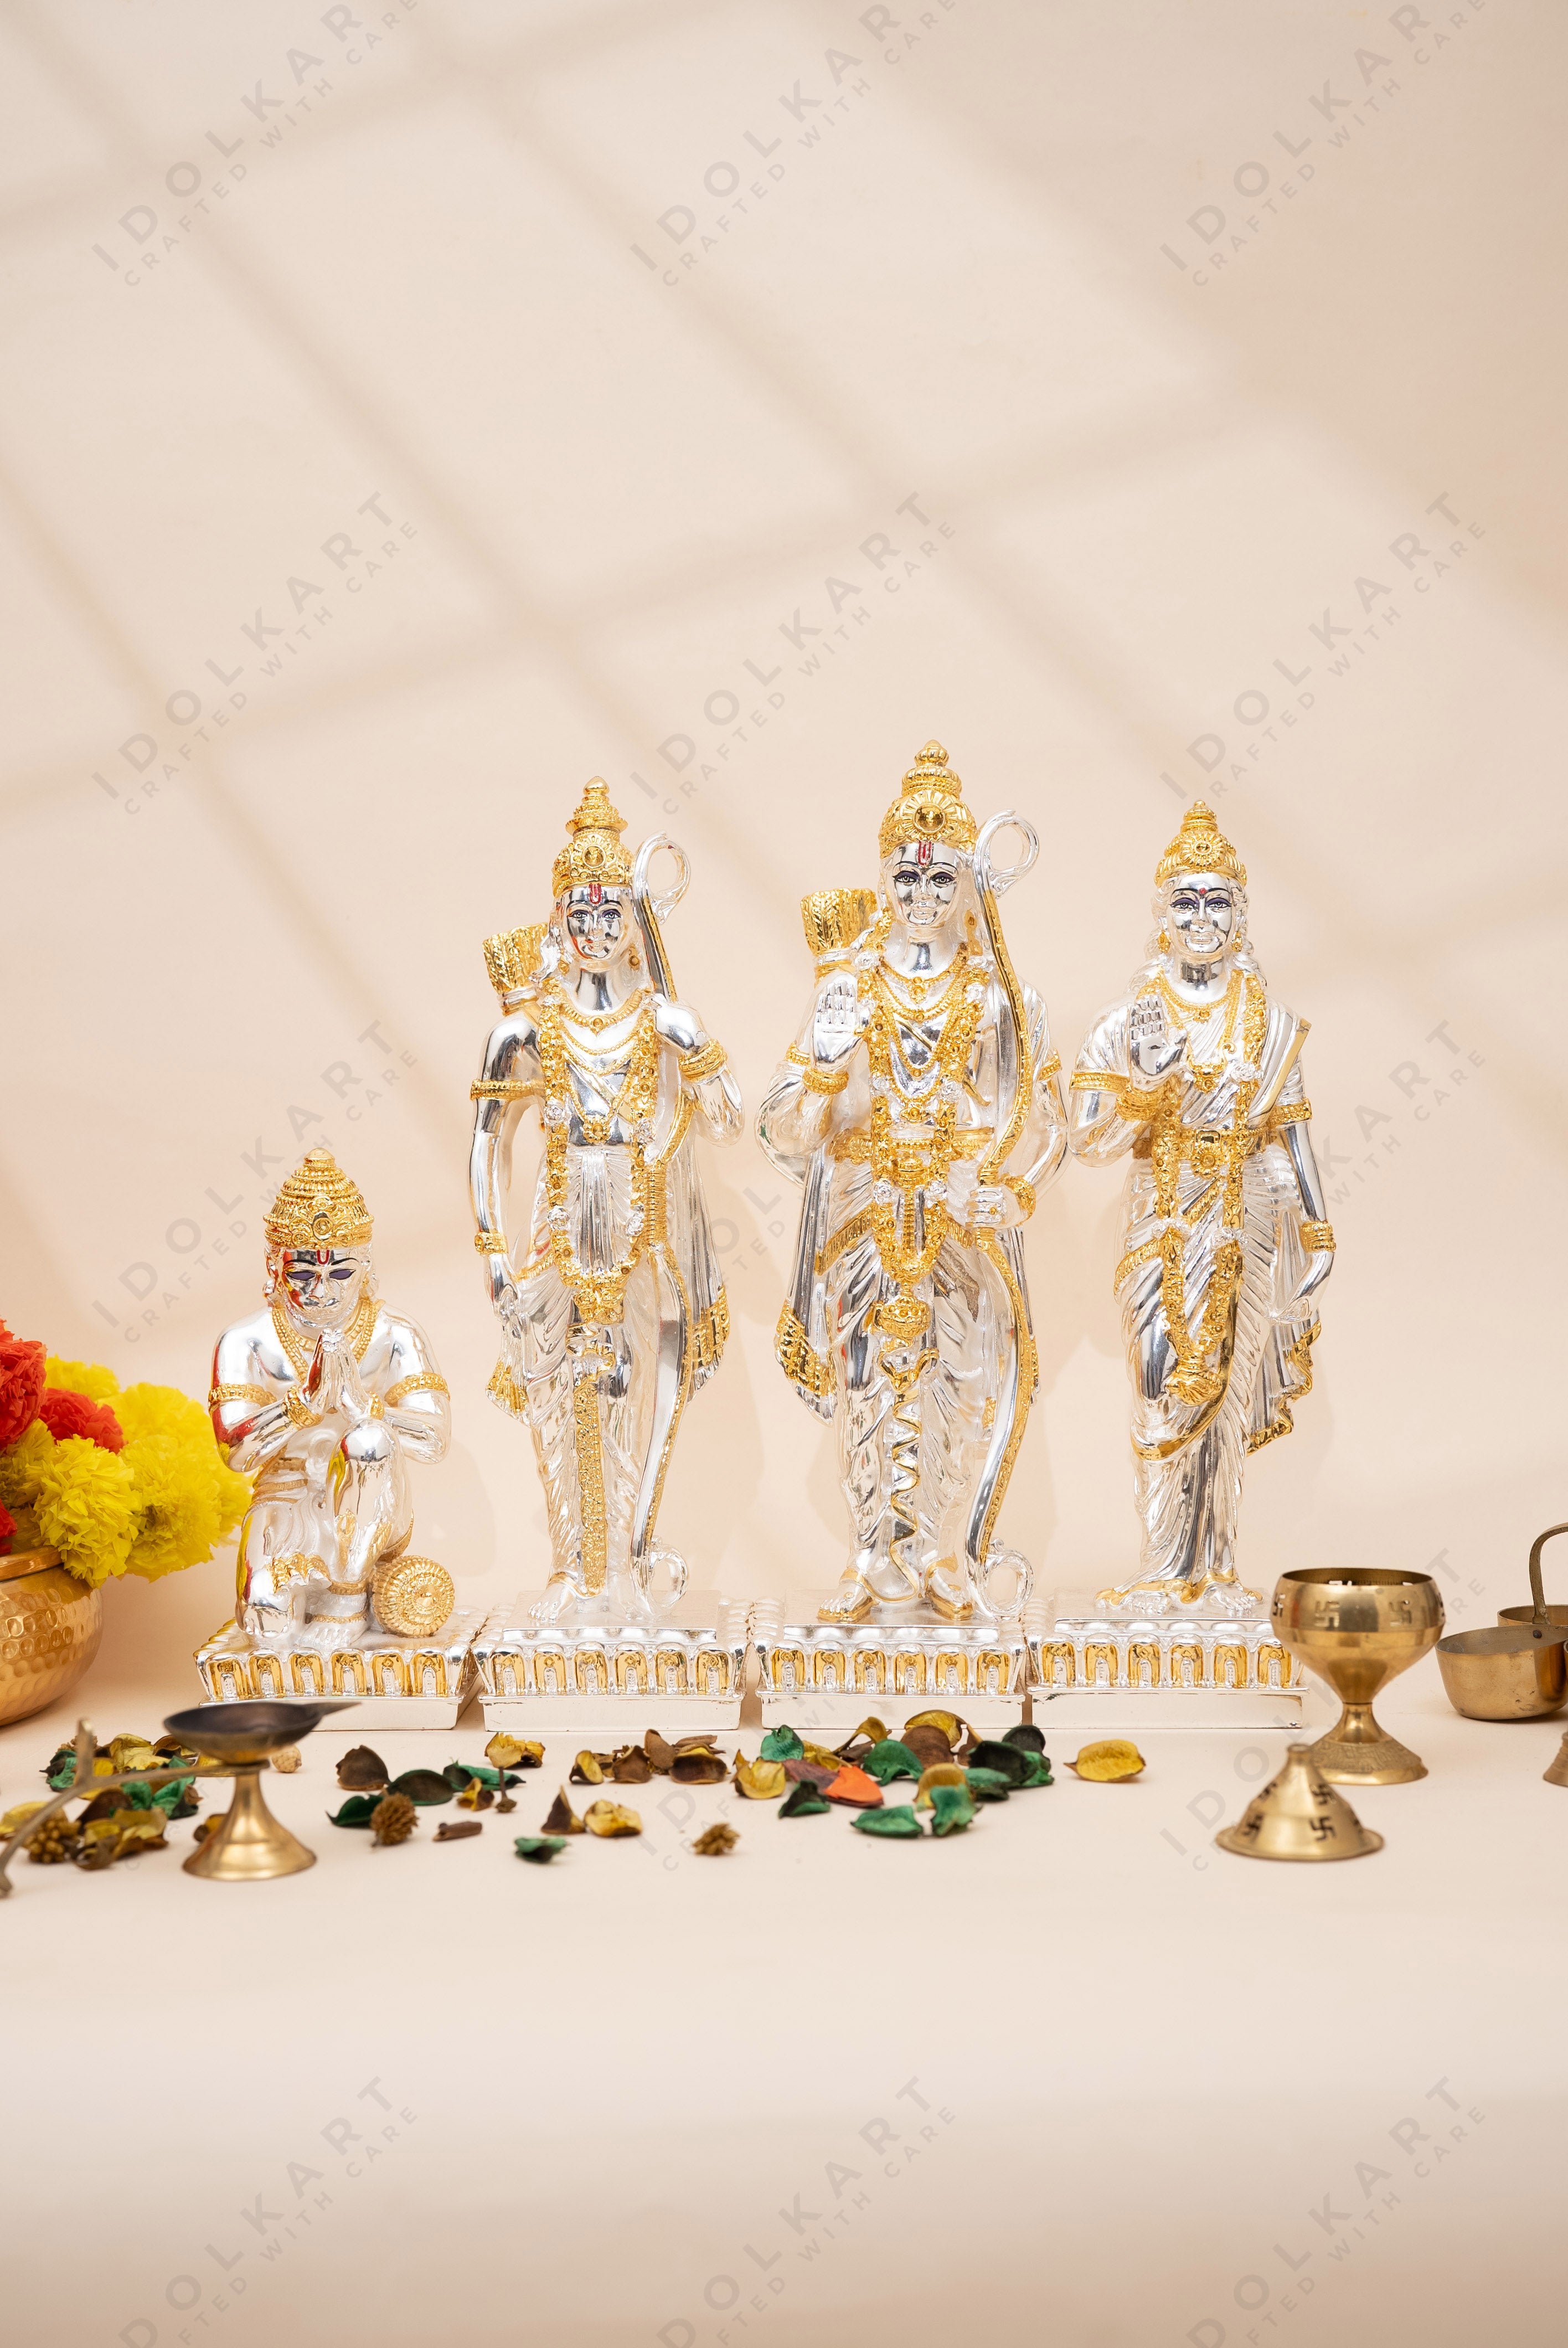 Ram Darbar Collection - Hanuman, Laxman, Ram & Sita